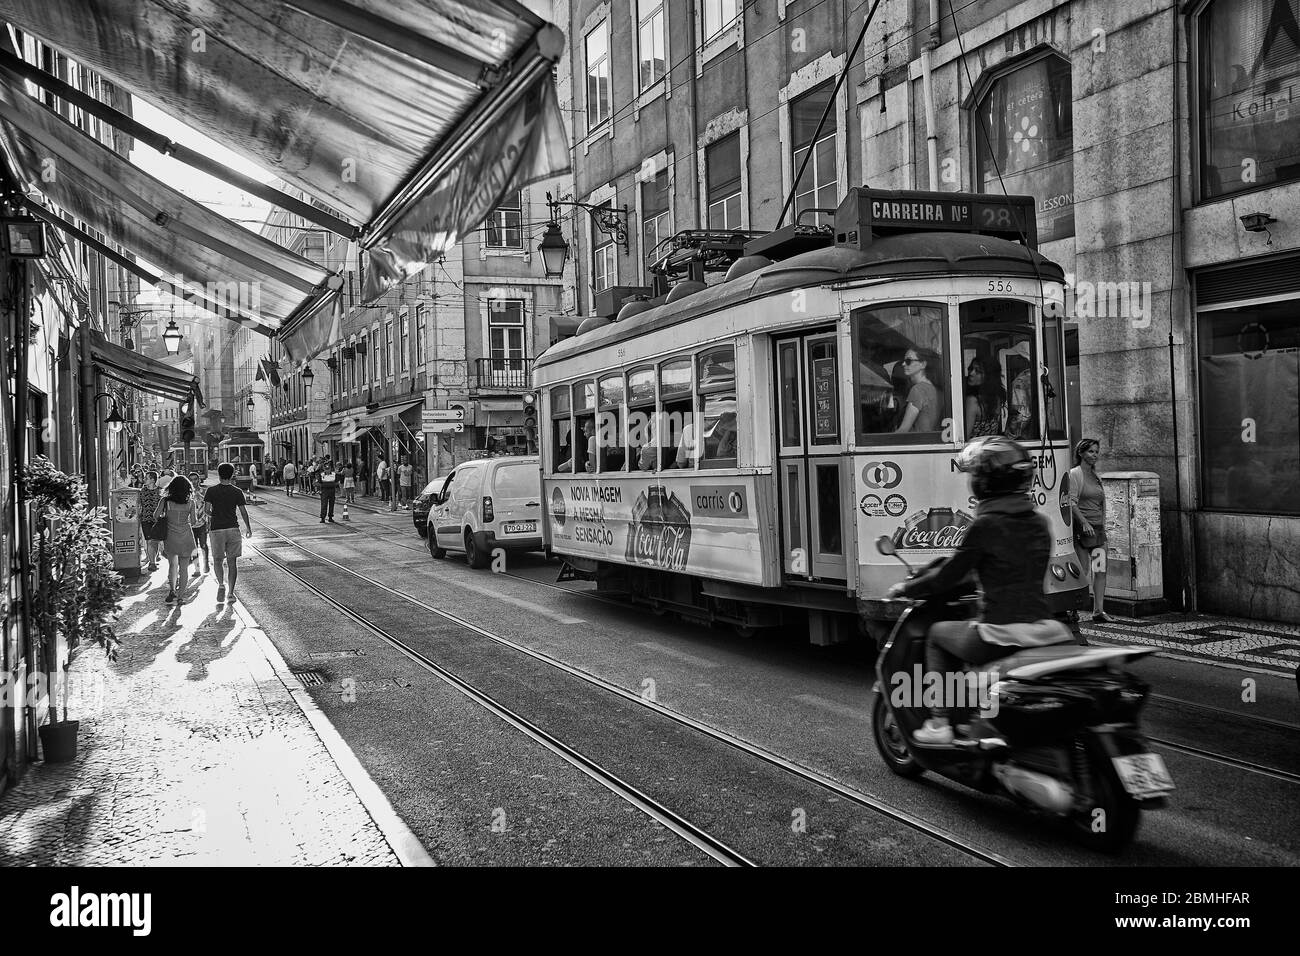 Un tram si sposta lungo una strada nella zona della città vecchia di Lisbona, Portogallo. Foto Stock